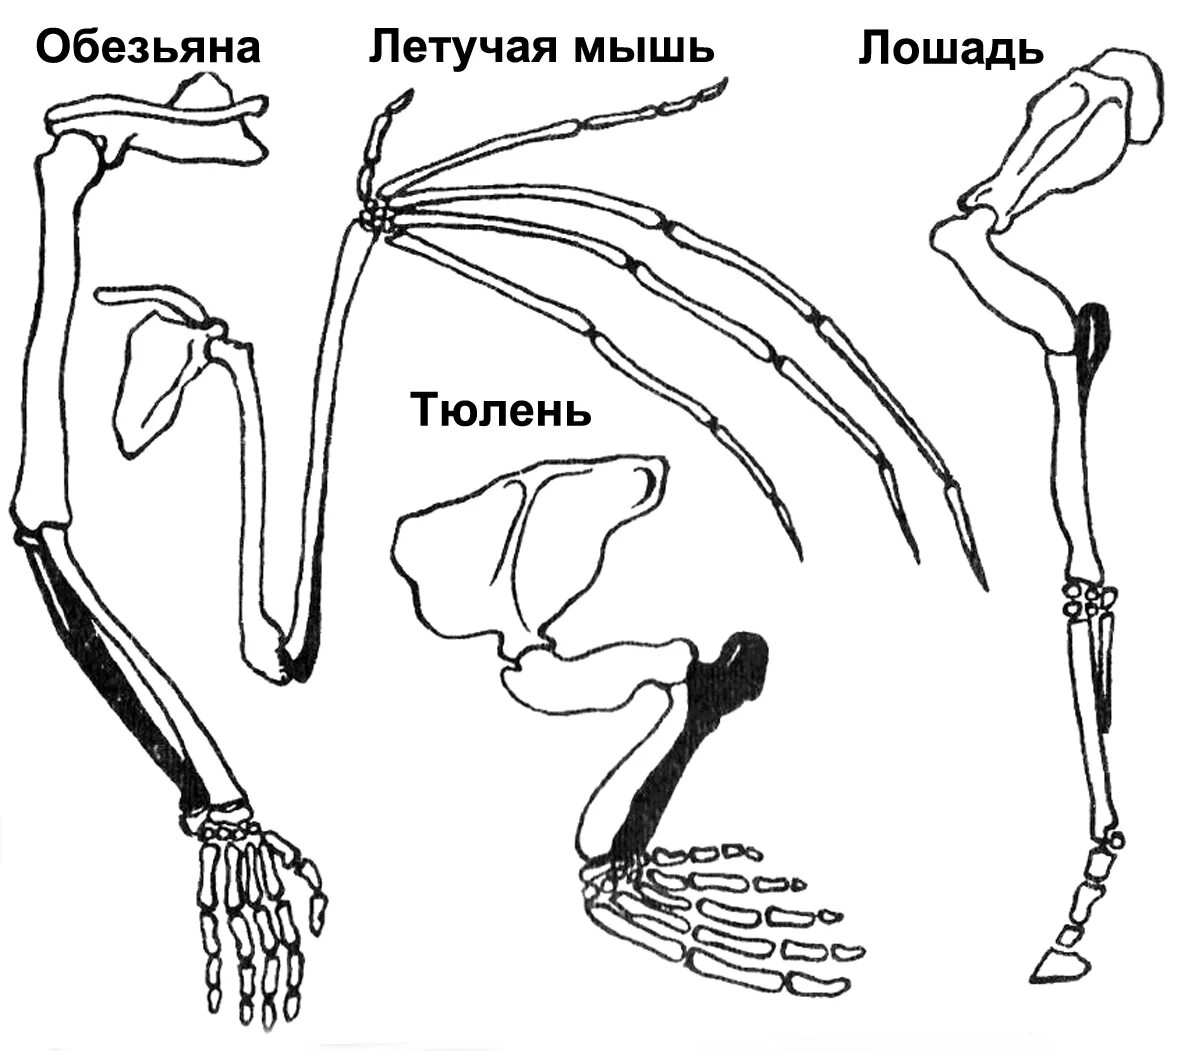 Скелет пояса задних конечностей млекопитающих. Пояс задних конечностей у млекопитающих. Строение задних конечностей млекопитающих. Строение скелета верхней конечности позвоночных животных. Конечности беспозвоночных